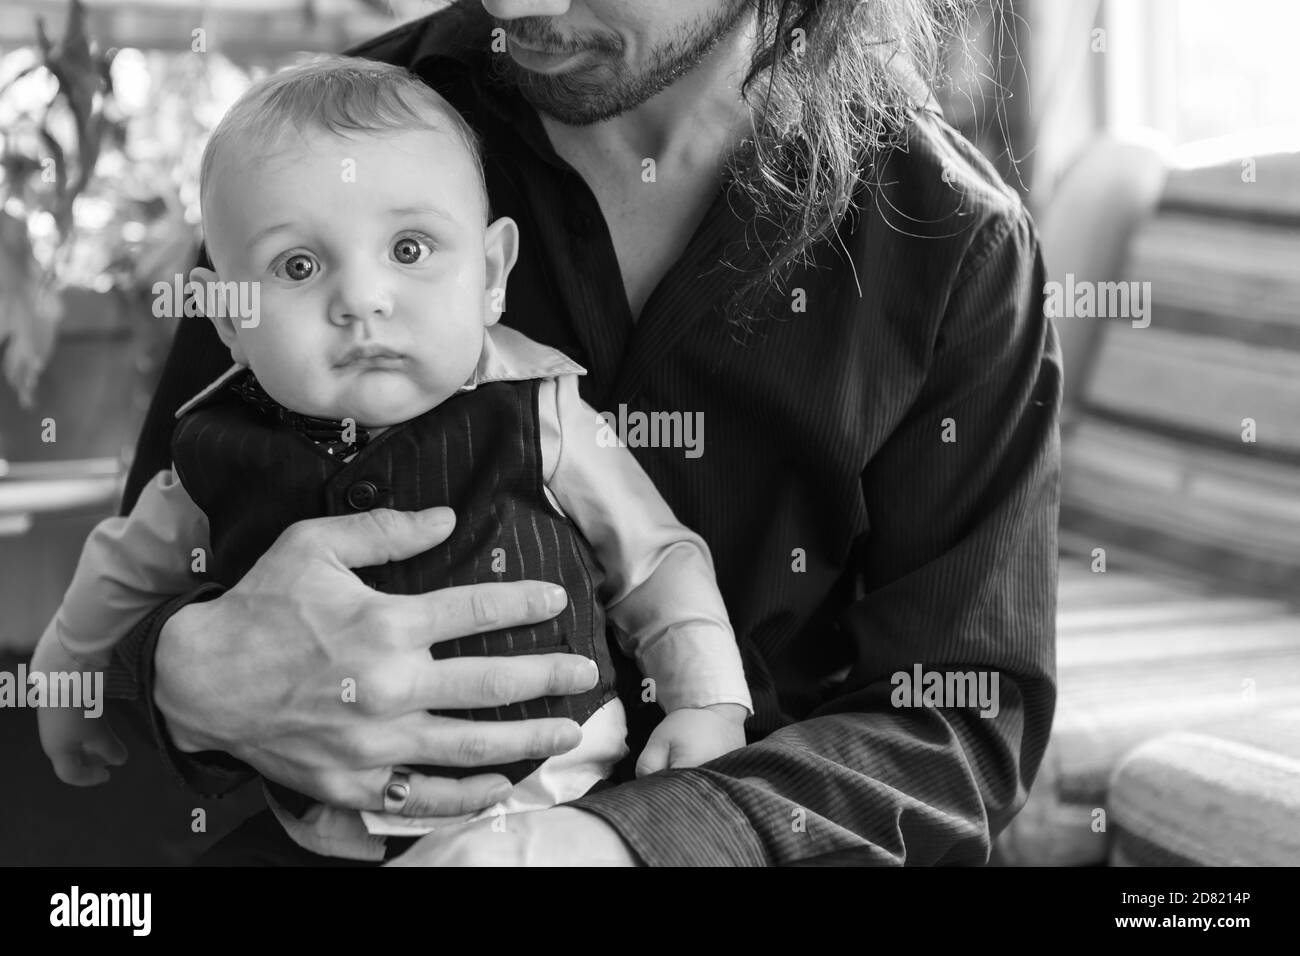 Retrato en blanco negro de un lindo bebé niño vestido, con ropa formal con lazo sentado en el hombre con un largo regazo de pelo en casa Fotografía de stock -